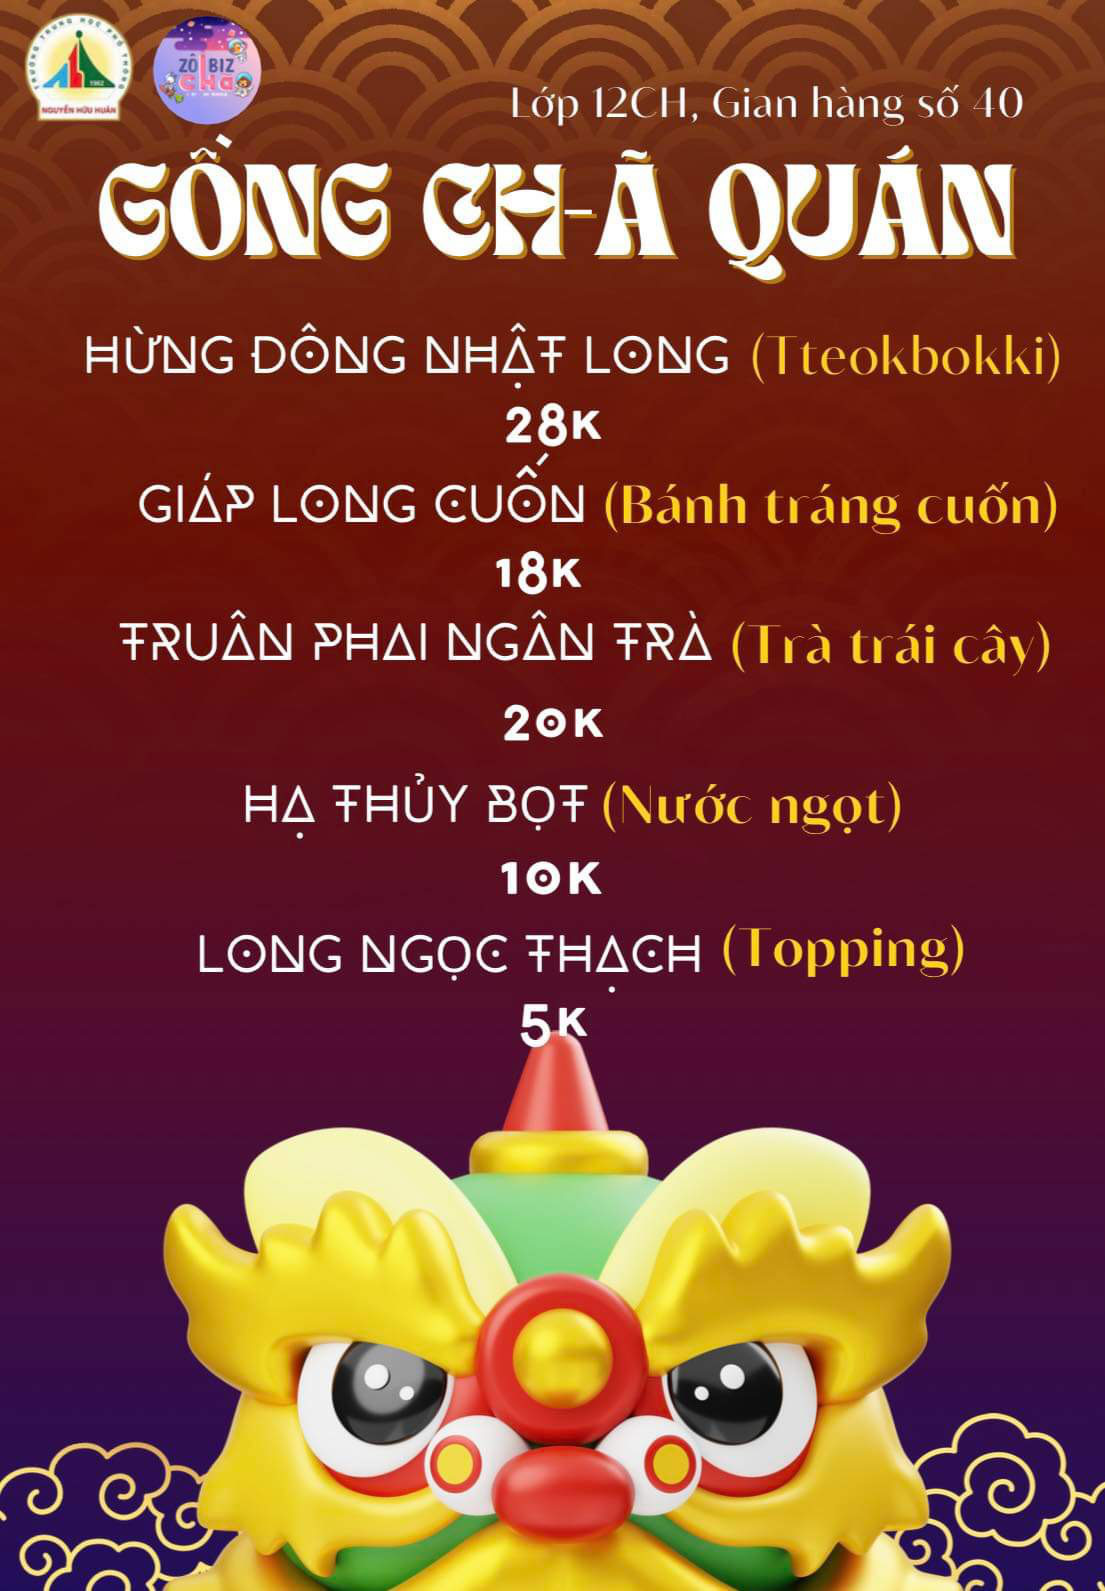 Teen THPT Nguyễn Hữu Huân khoe menu cực ngon trước thềm Hội chợ dân gian- Ảnh 1.